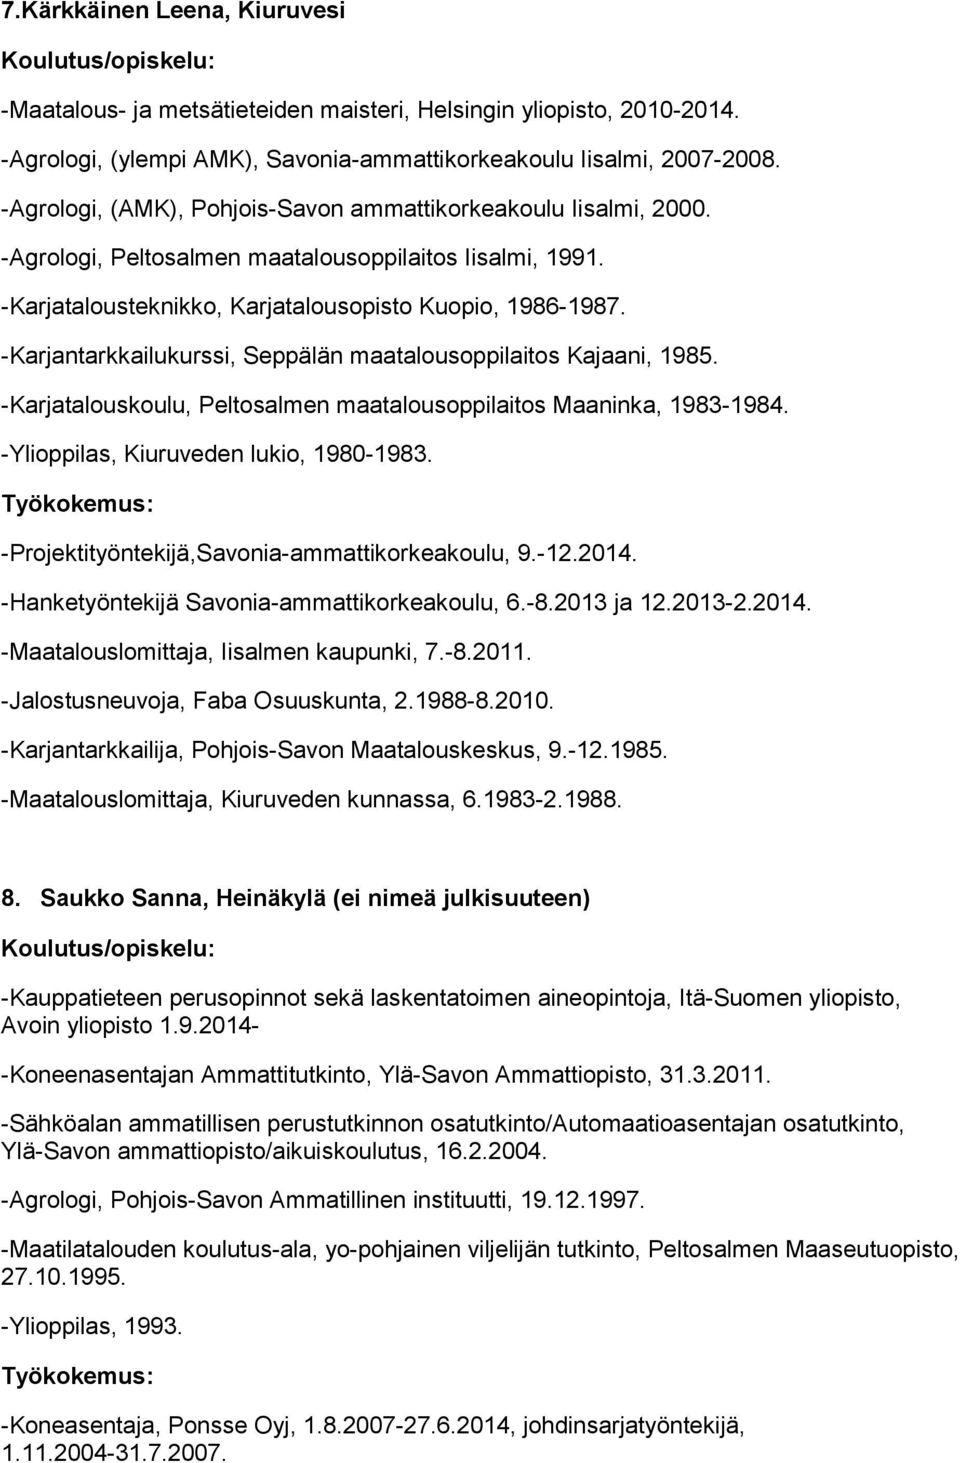 -Karjantarkkailukurssi, Seppälän maatalousoppilaitos Kajaani, 1985. -Karjatalouskoulu, Peltosalmen maatalousoppilaitos Maaninka, 1983-1984. -Ylioppilas, Kiuruveden lukio, 1980-1983.